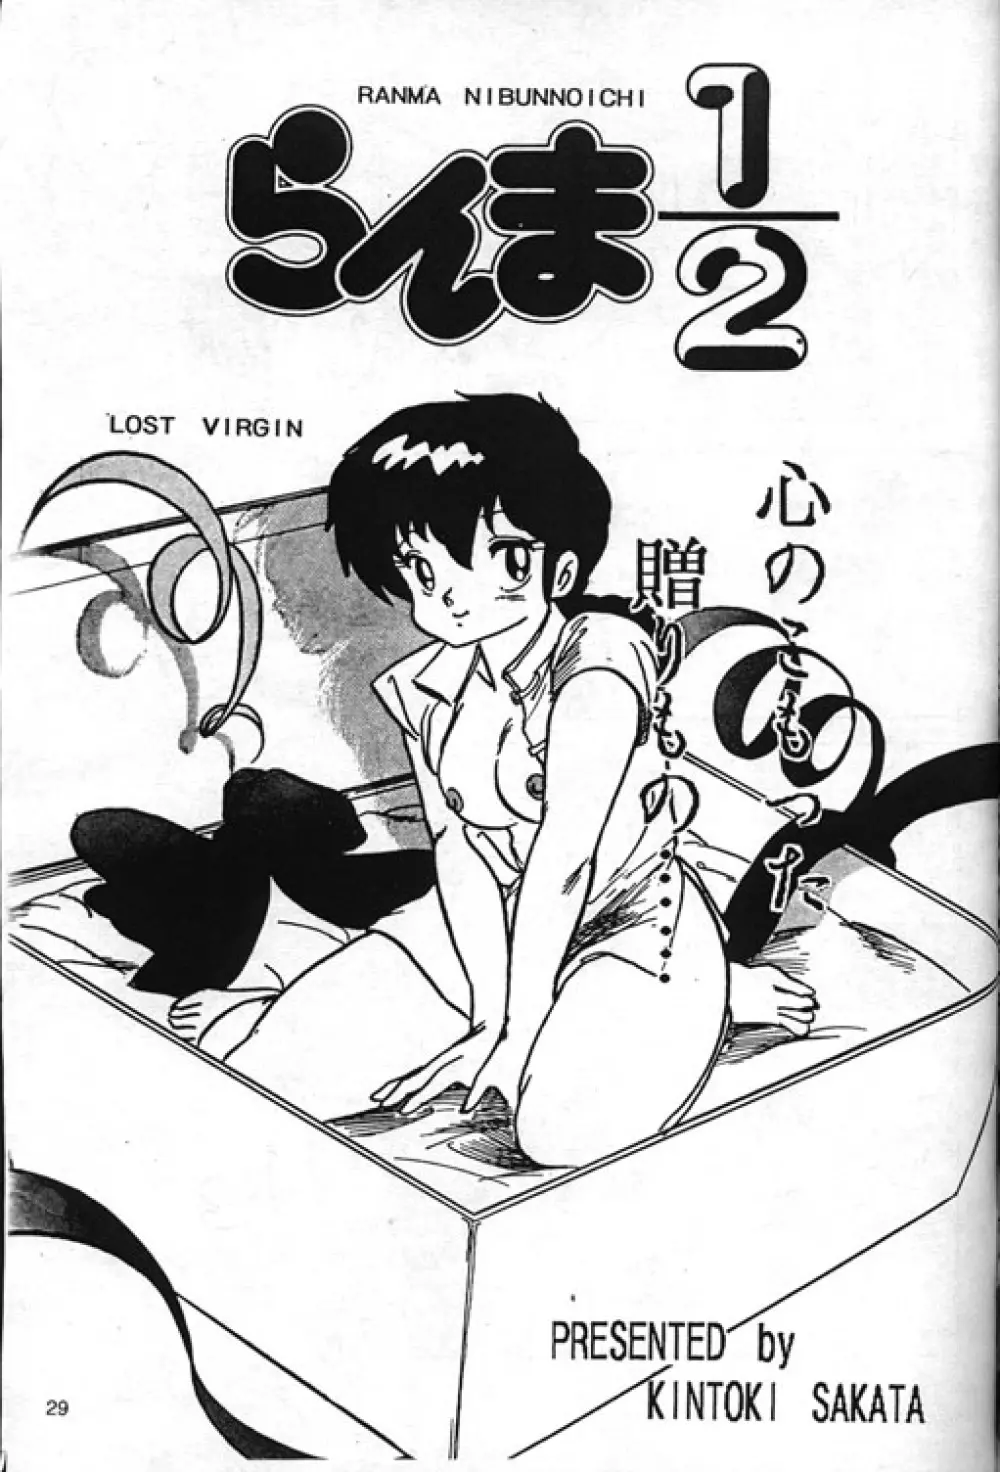 [Kintoki Sakata] Ranma Nibunnoichi - Esse Orange - Lost Virgin (Ranma 1/2) - page1